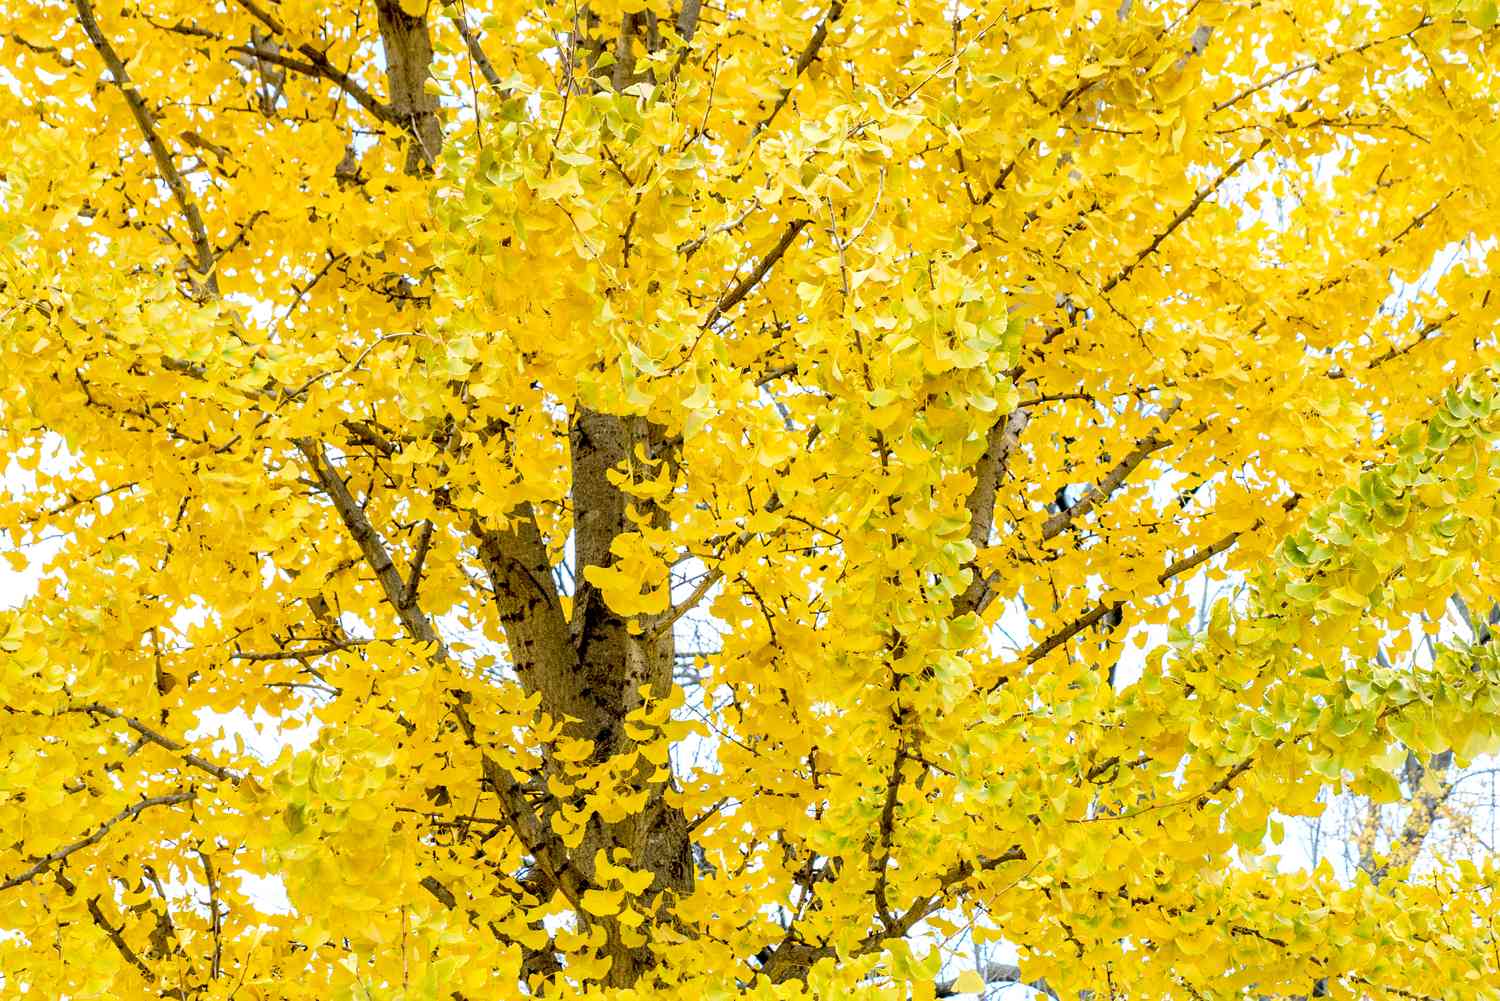 ginkgo biloba tree in fall